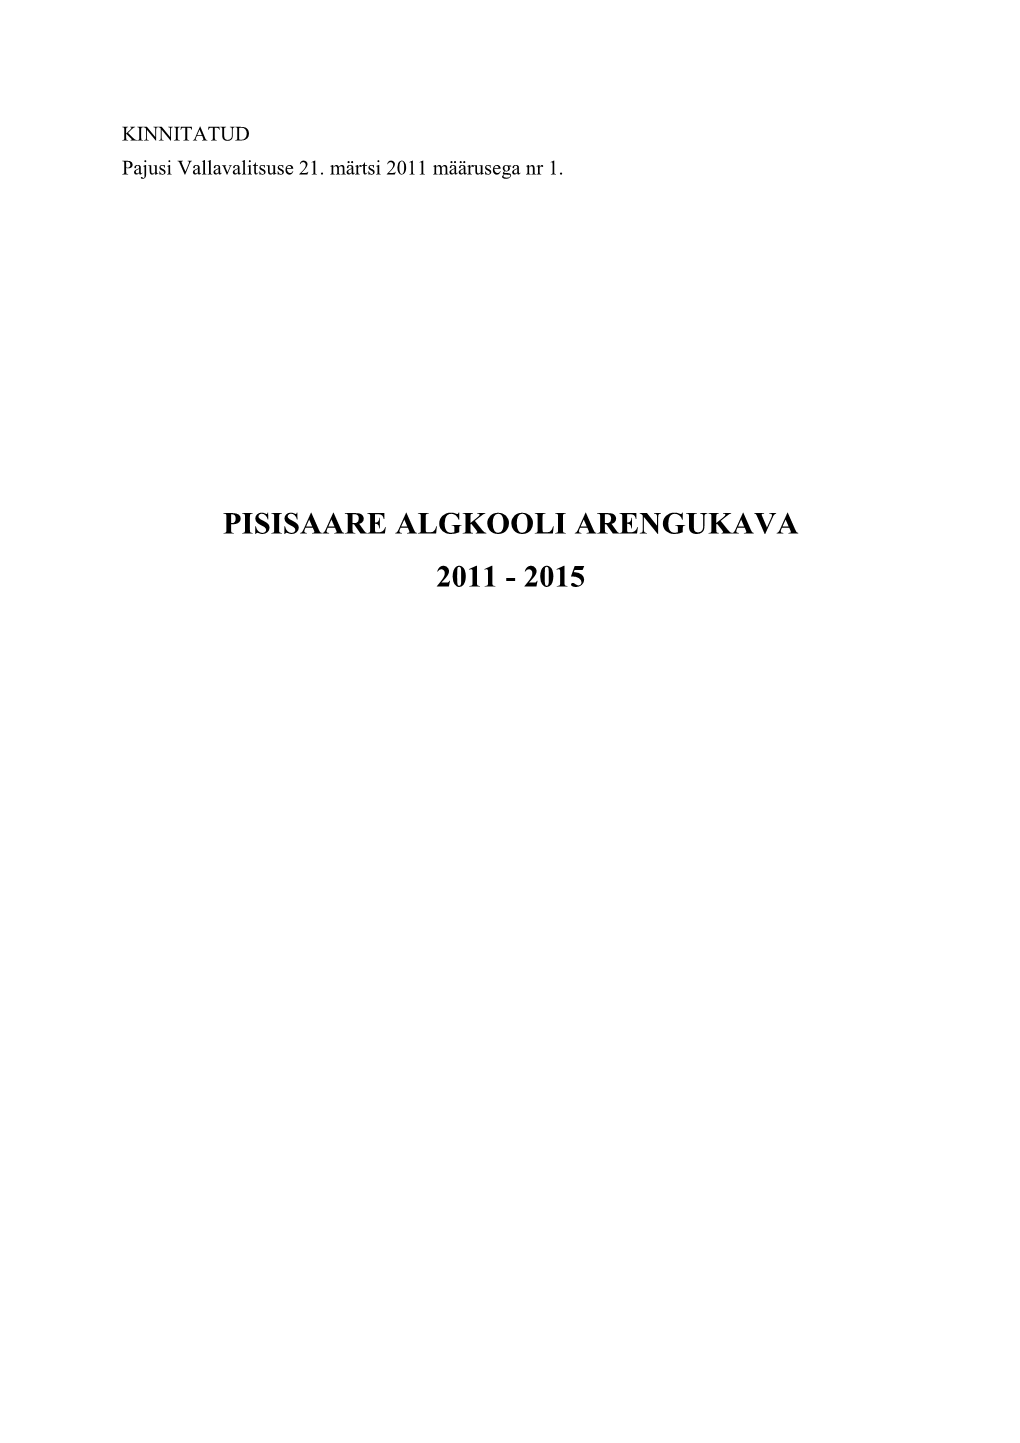 Pisisaare Algkooli Arengukava 2011 - 2015 Sisukord Sisukord